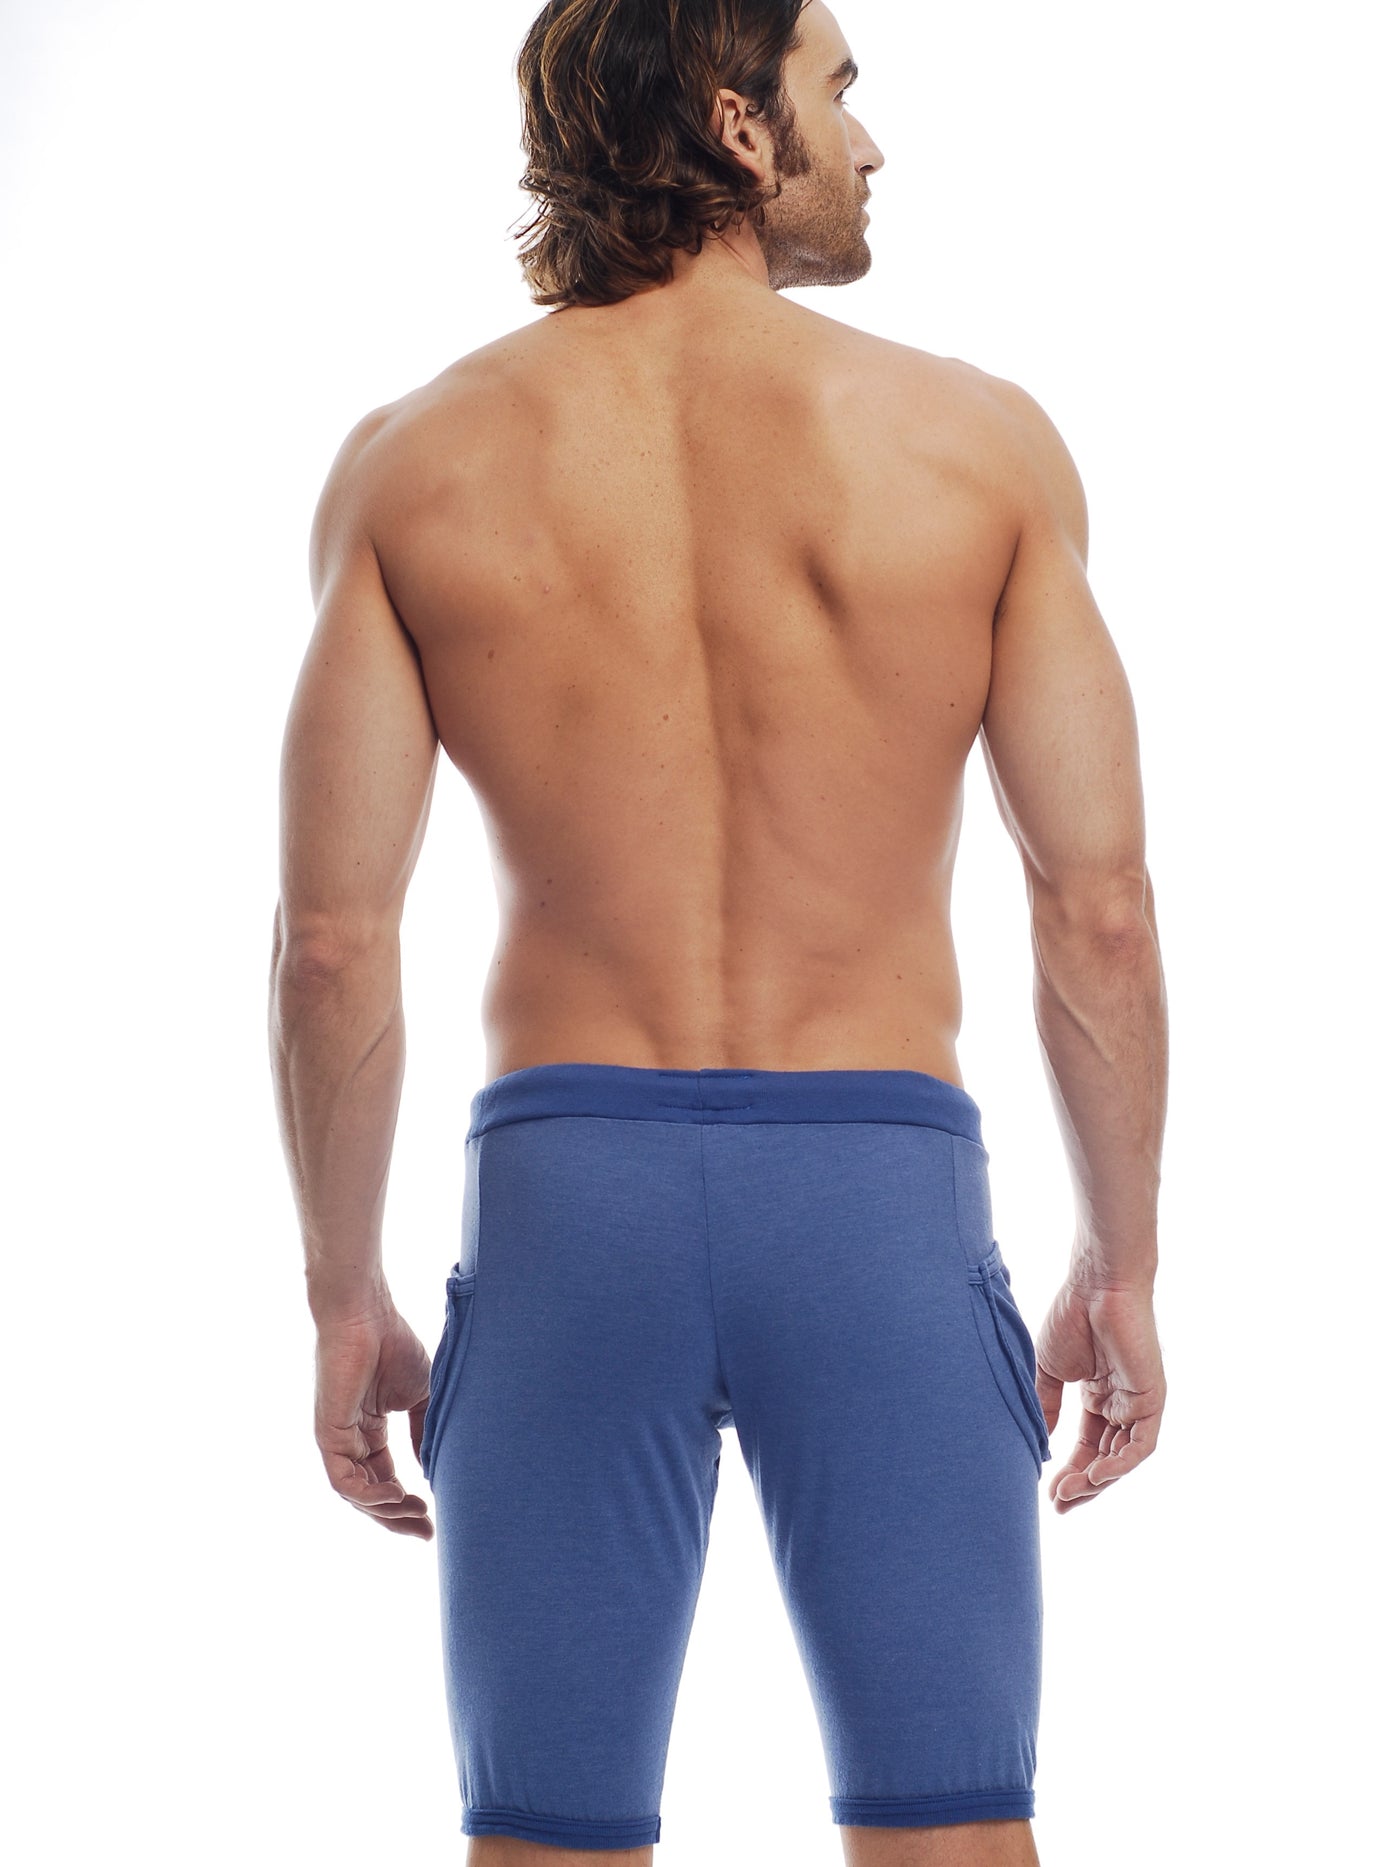 GO SOFTWEAR Vintage Wash Yoga Shorts For Men Cadet Blue - Activemen Clothing